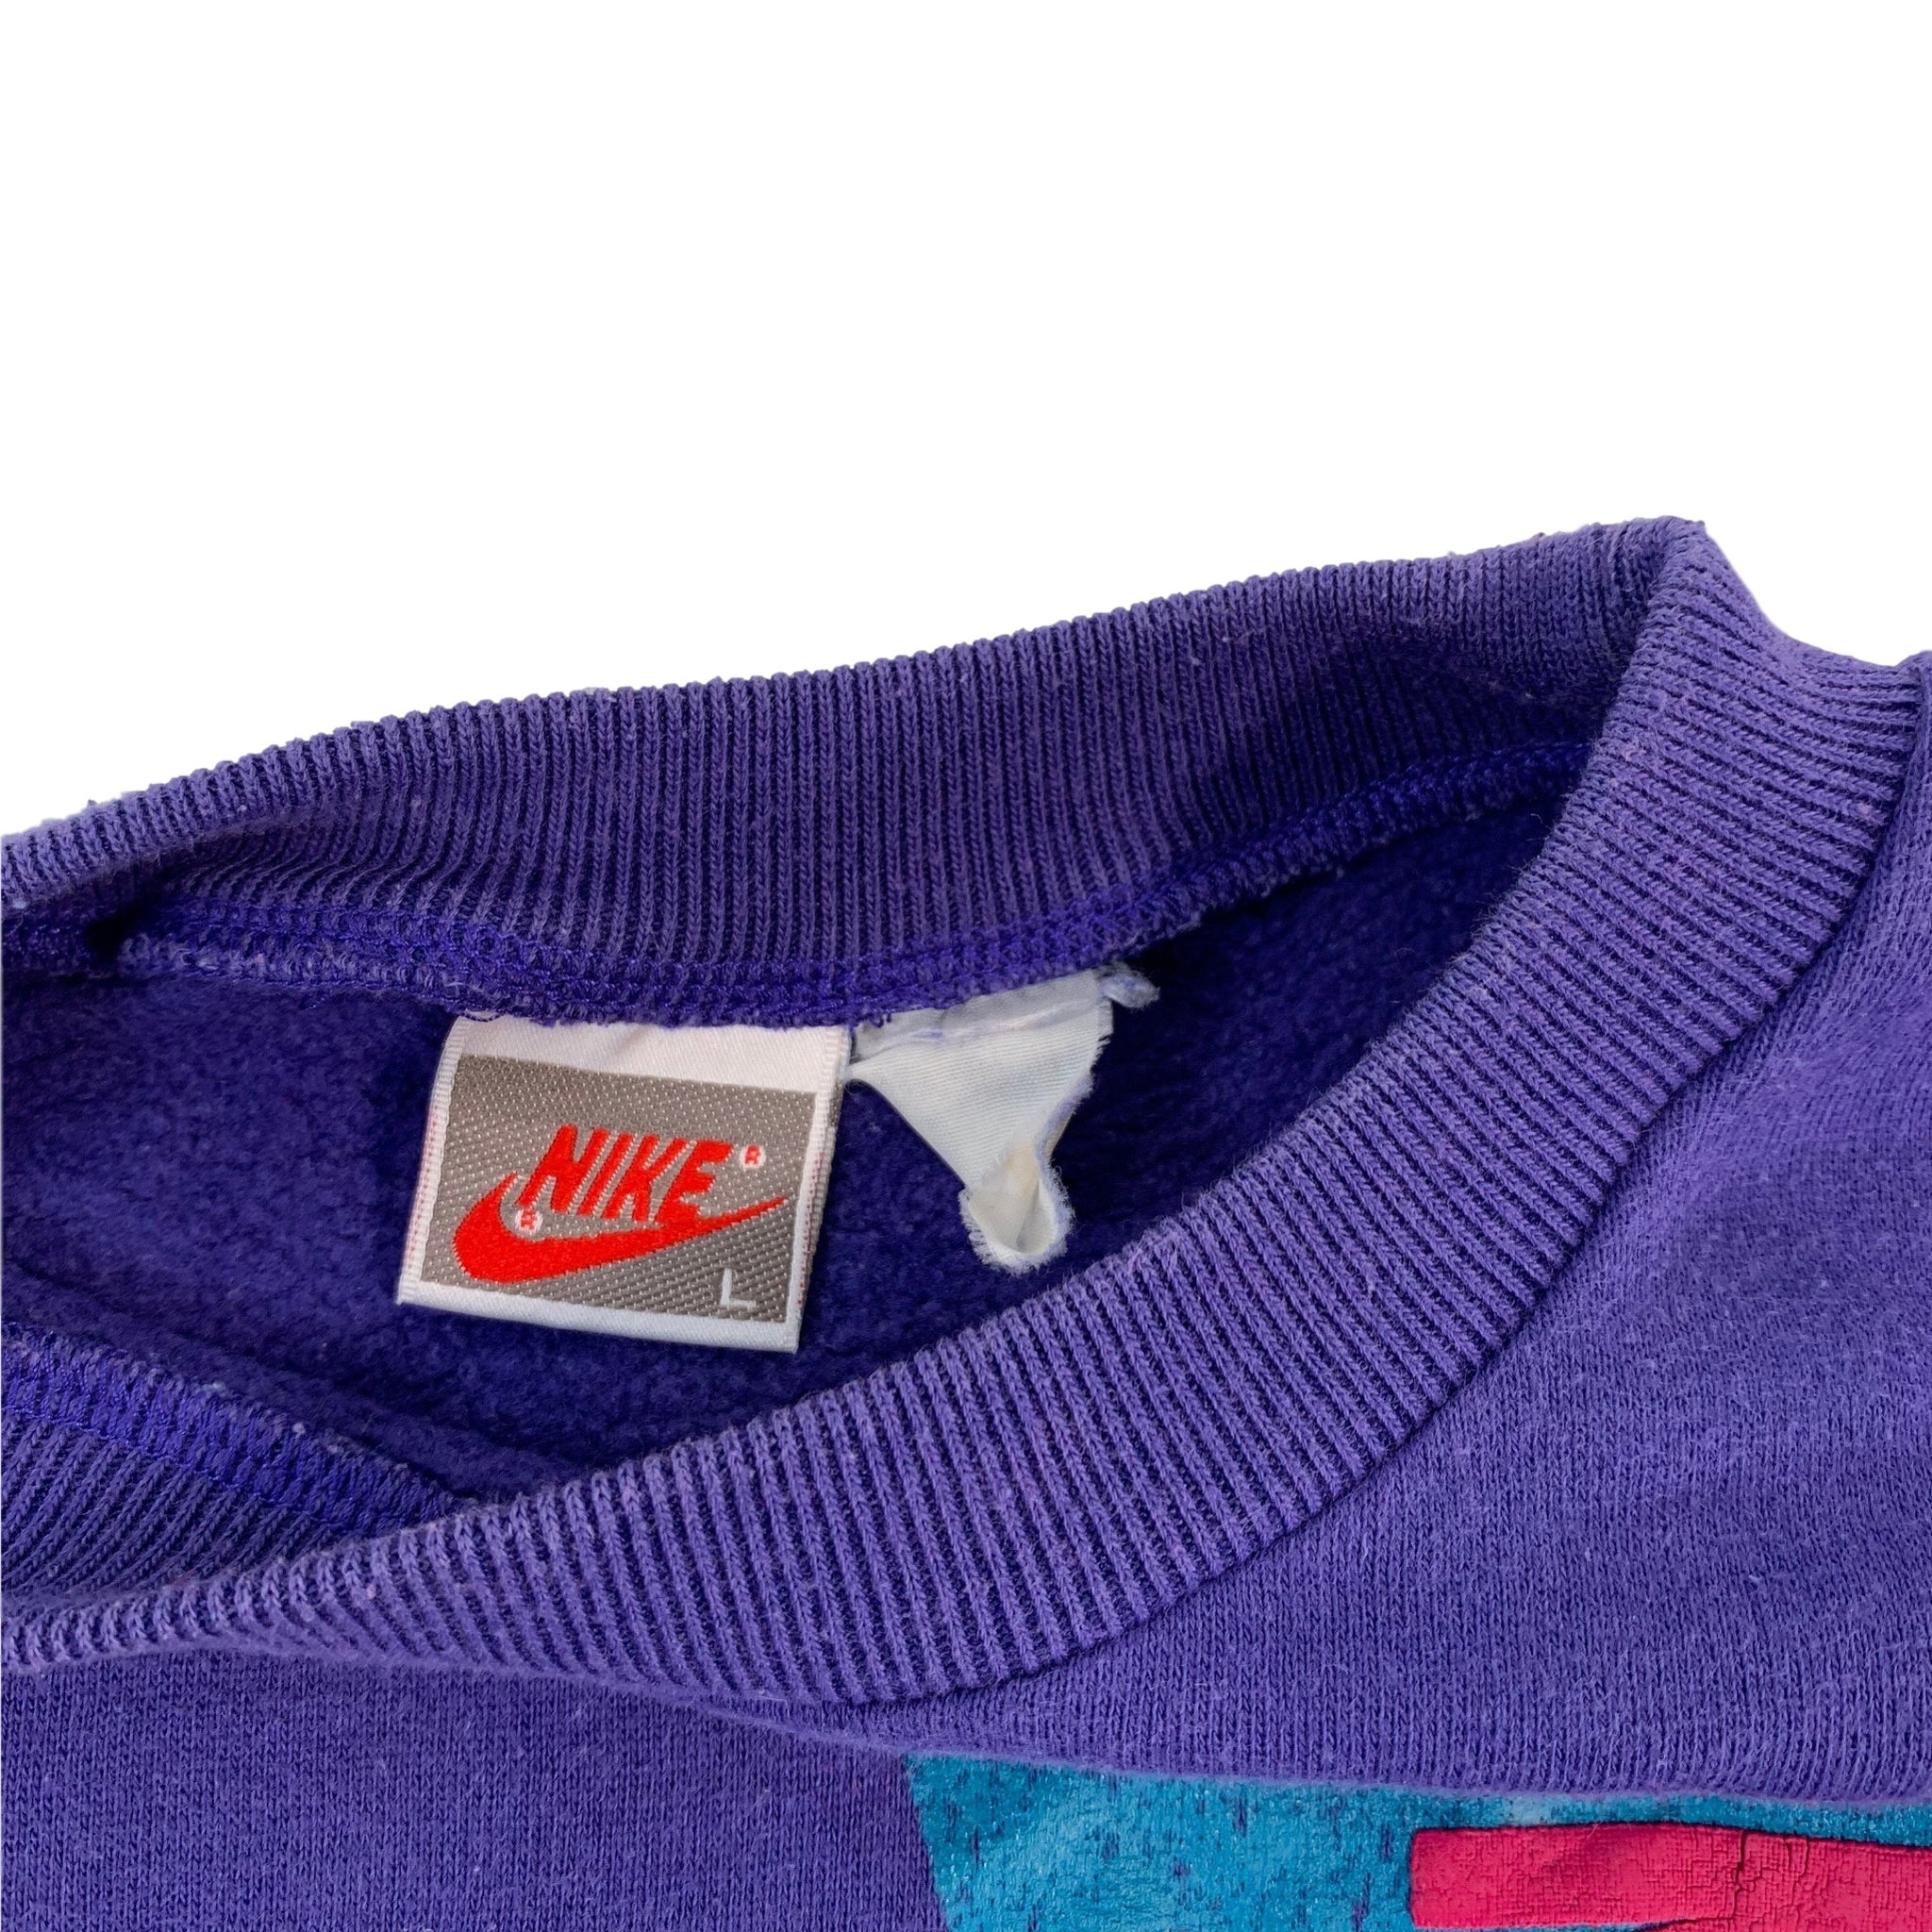 Vintage Nike Michael Jordan Puffy Ink Crewneck Sweatshirt